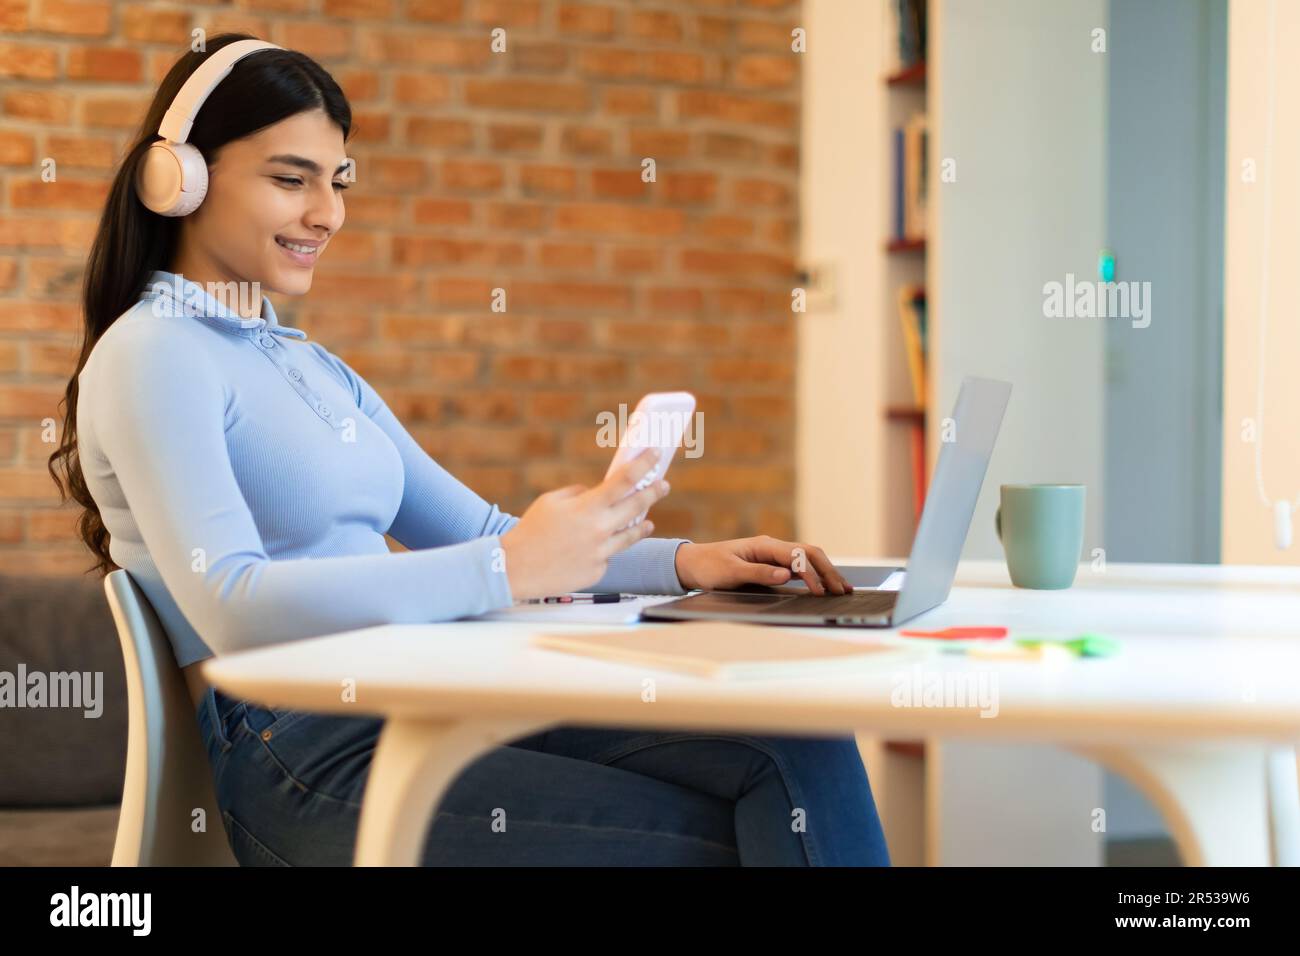 Joyeuse adolescente espagnole étudiant de la maison, assis avec un ordinateur portable, casque et téléphone, ayant pause des cours Banque D'Images